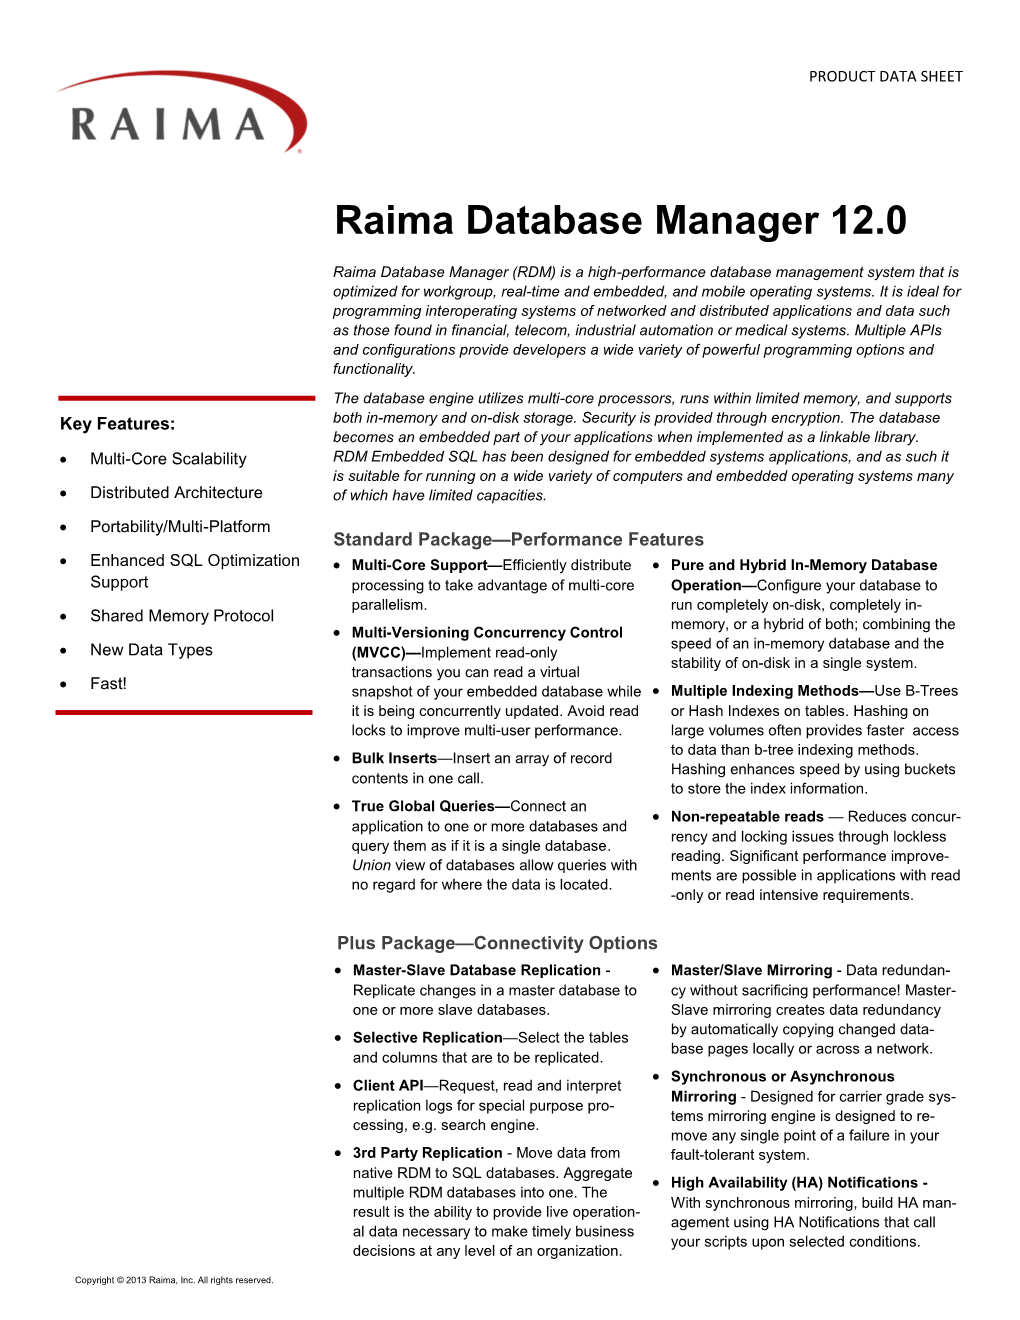 Raima Database Manager 12.0